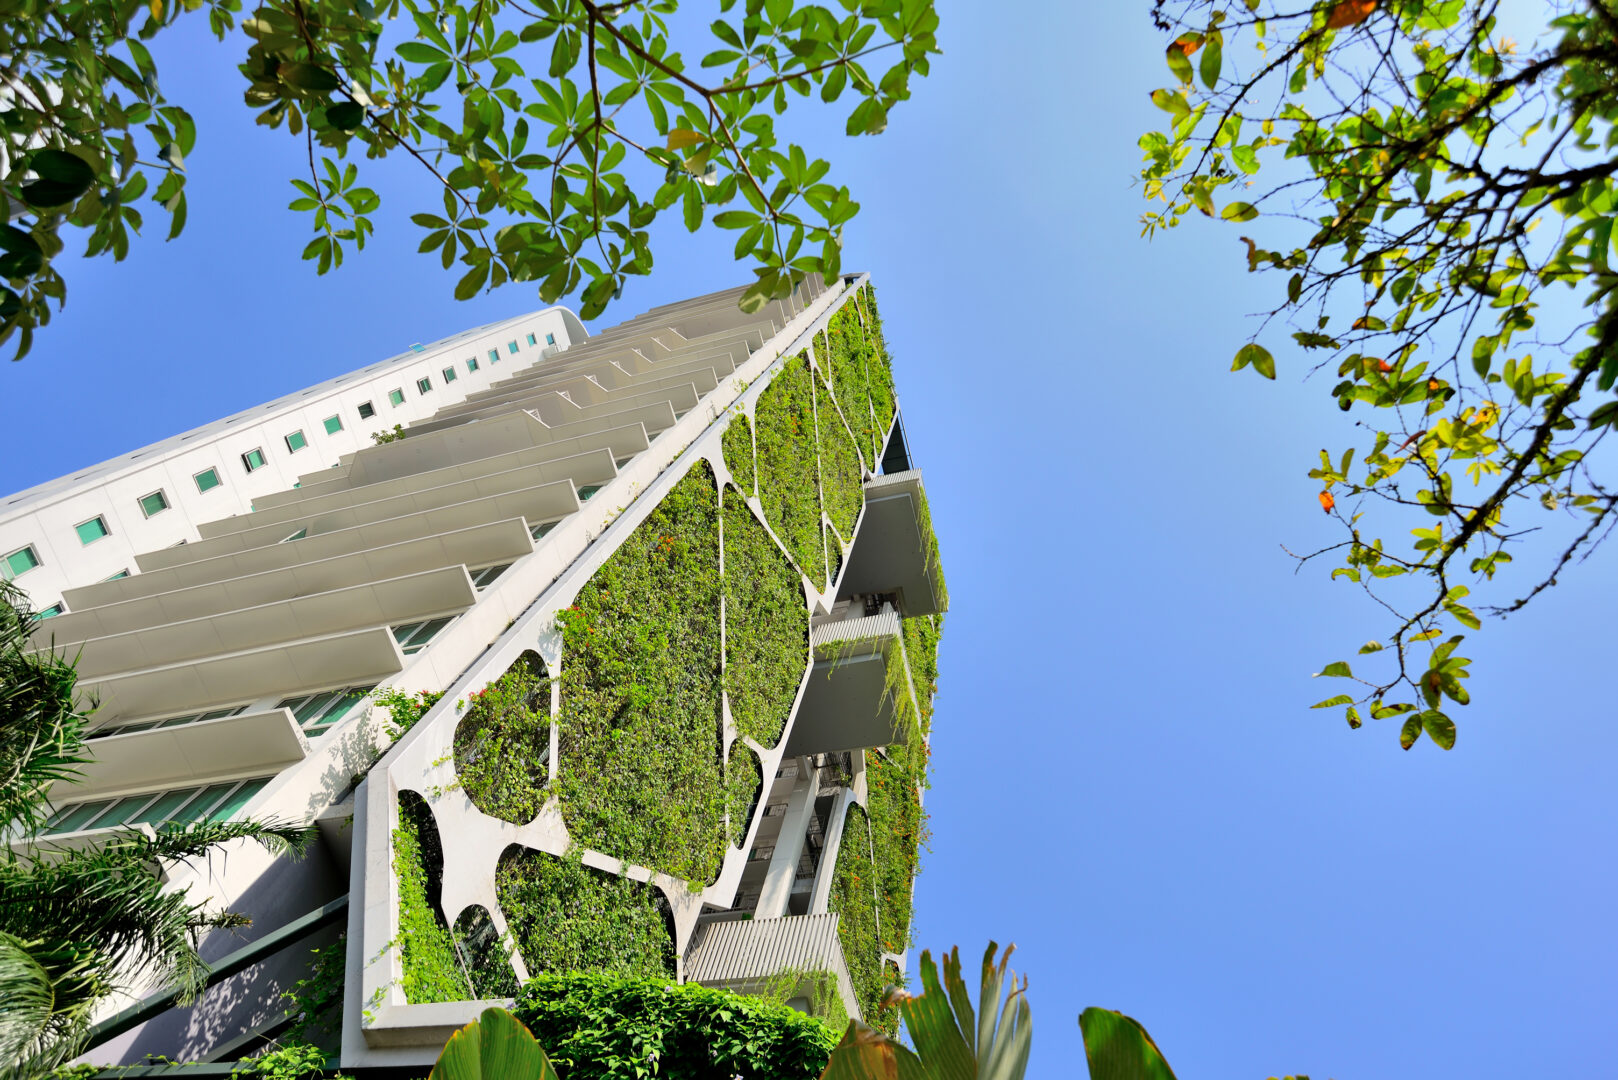 Cú “bắt tay” của Vinhomes và ADDP - Công ty kiến trúc hàng đầu Singapore tại Vinhomes Smart City - Ảnh 2.